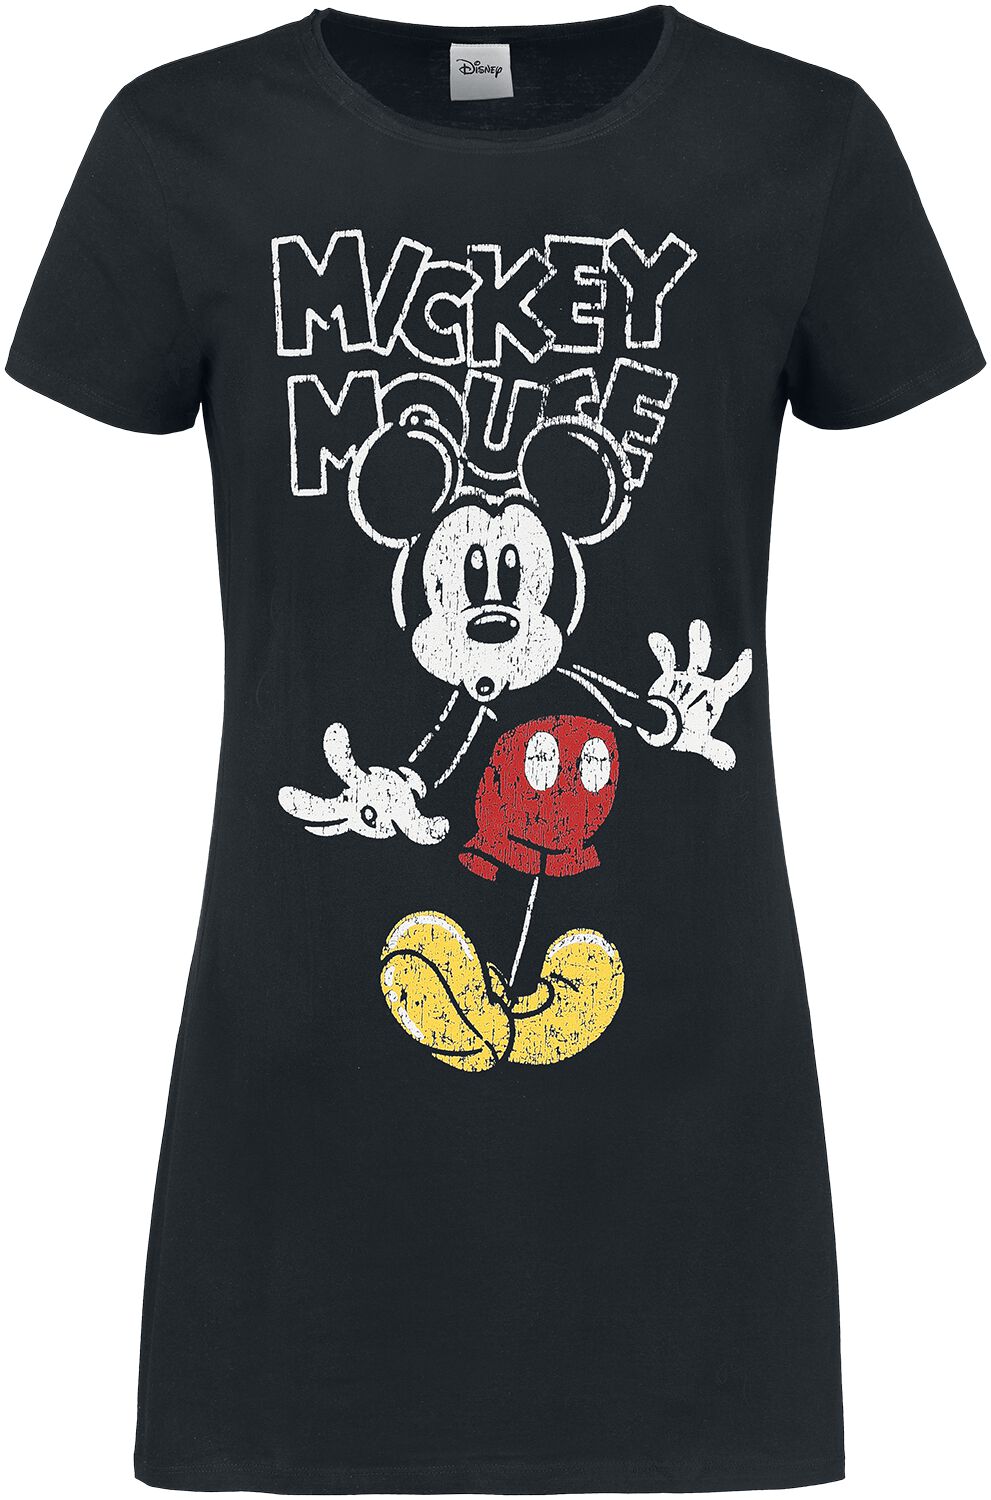 Micky Maus - Disney Kurzes Kleid - Mickey Mouse - S bis XL - für Damen - Größe M - schwarz  - EMP exklusives Merchandise! von Micky Maus